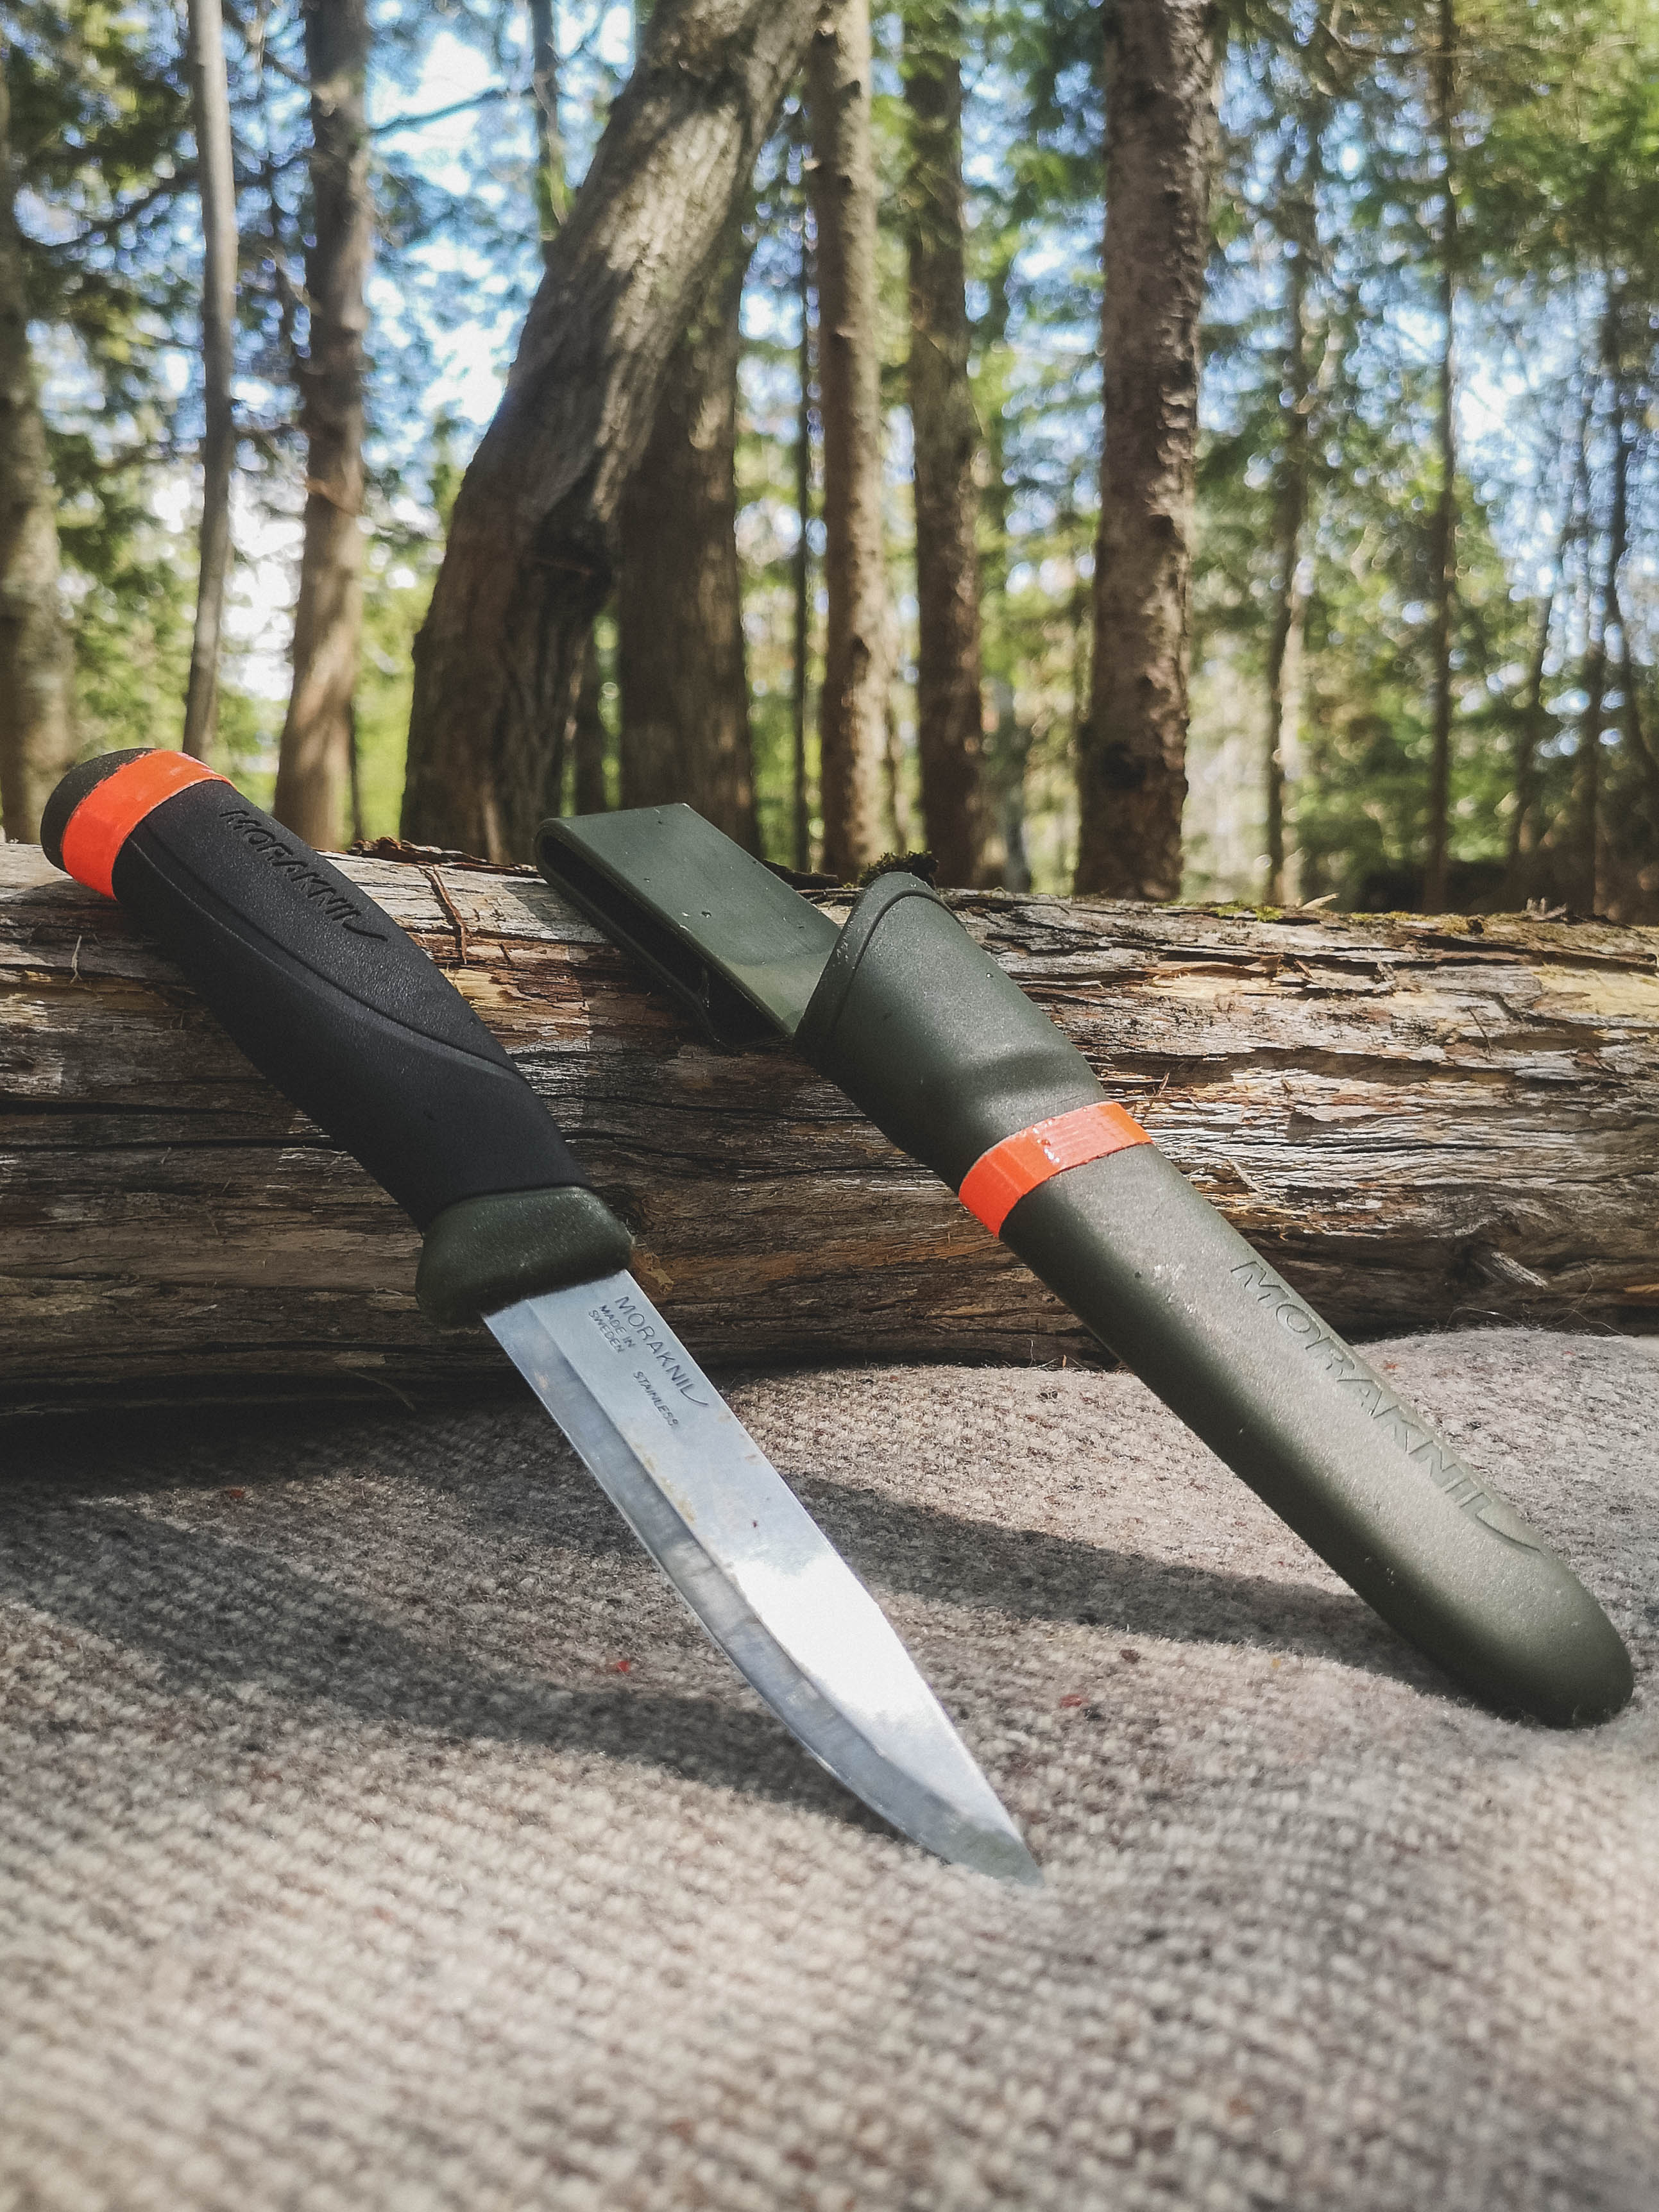 couteau pour survie en forêt